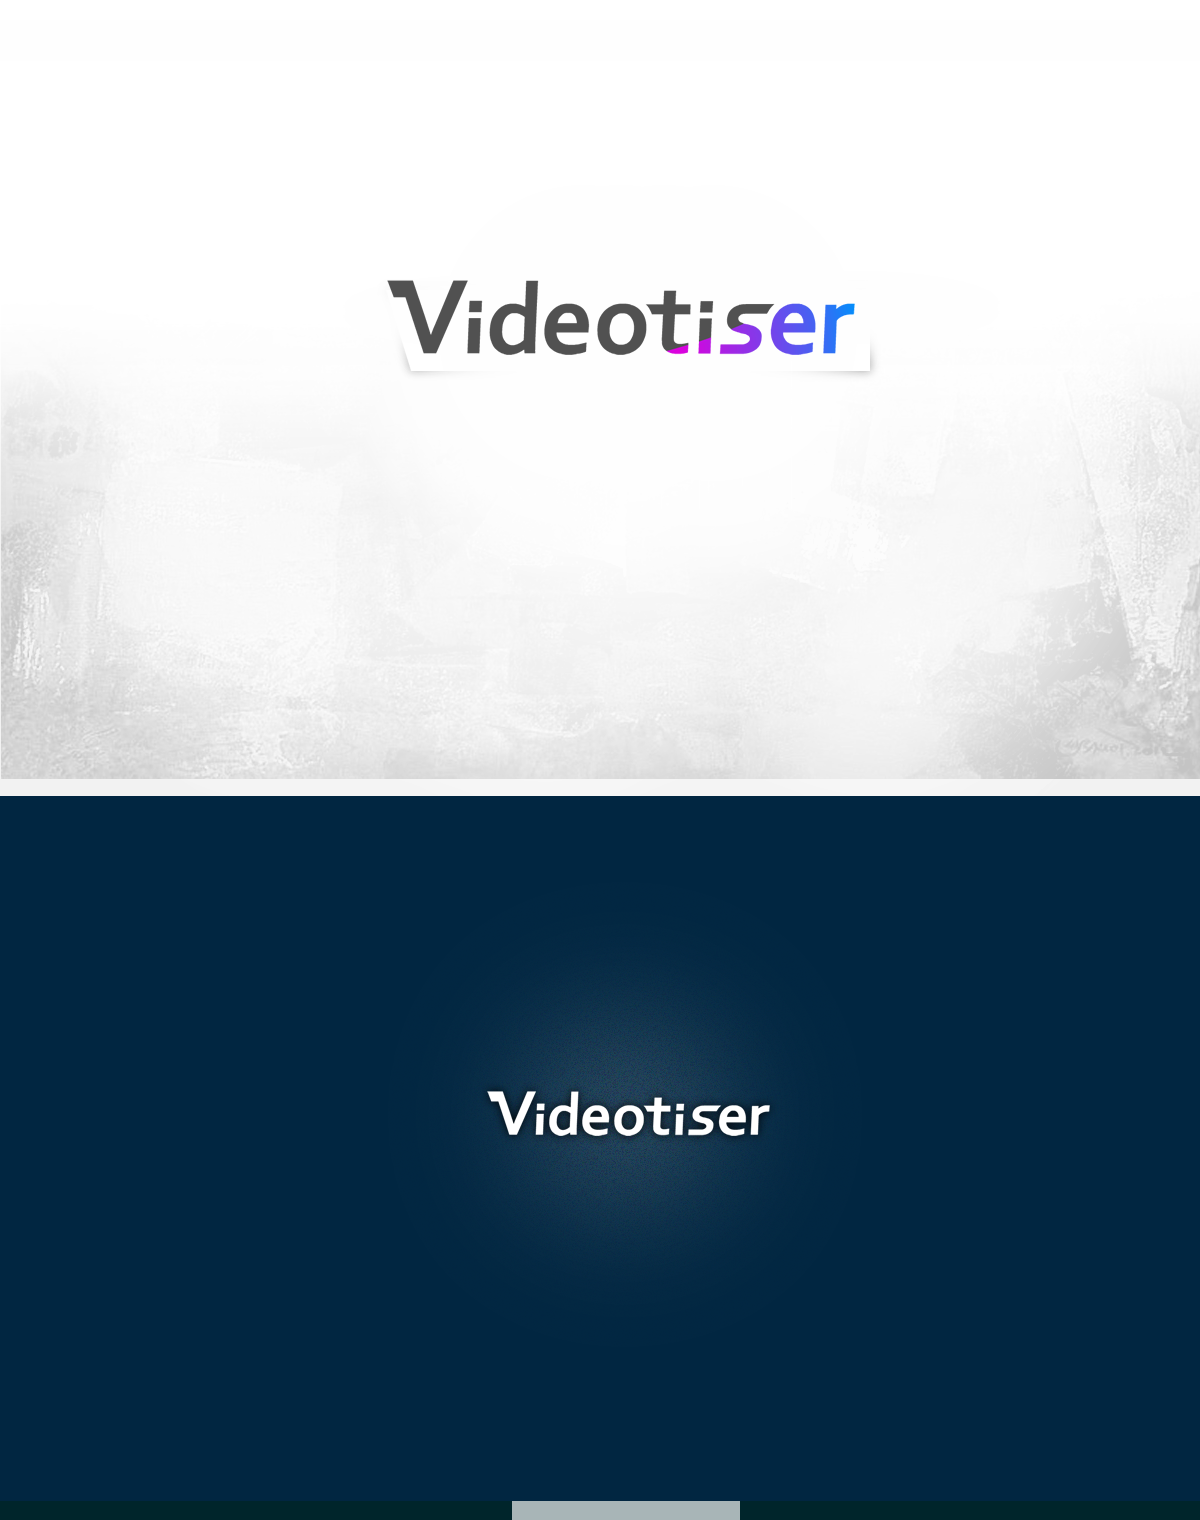 VIDEOTISER V24b.png